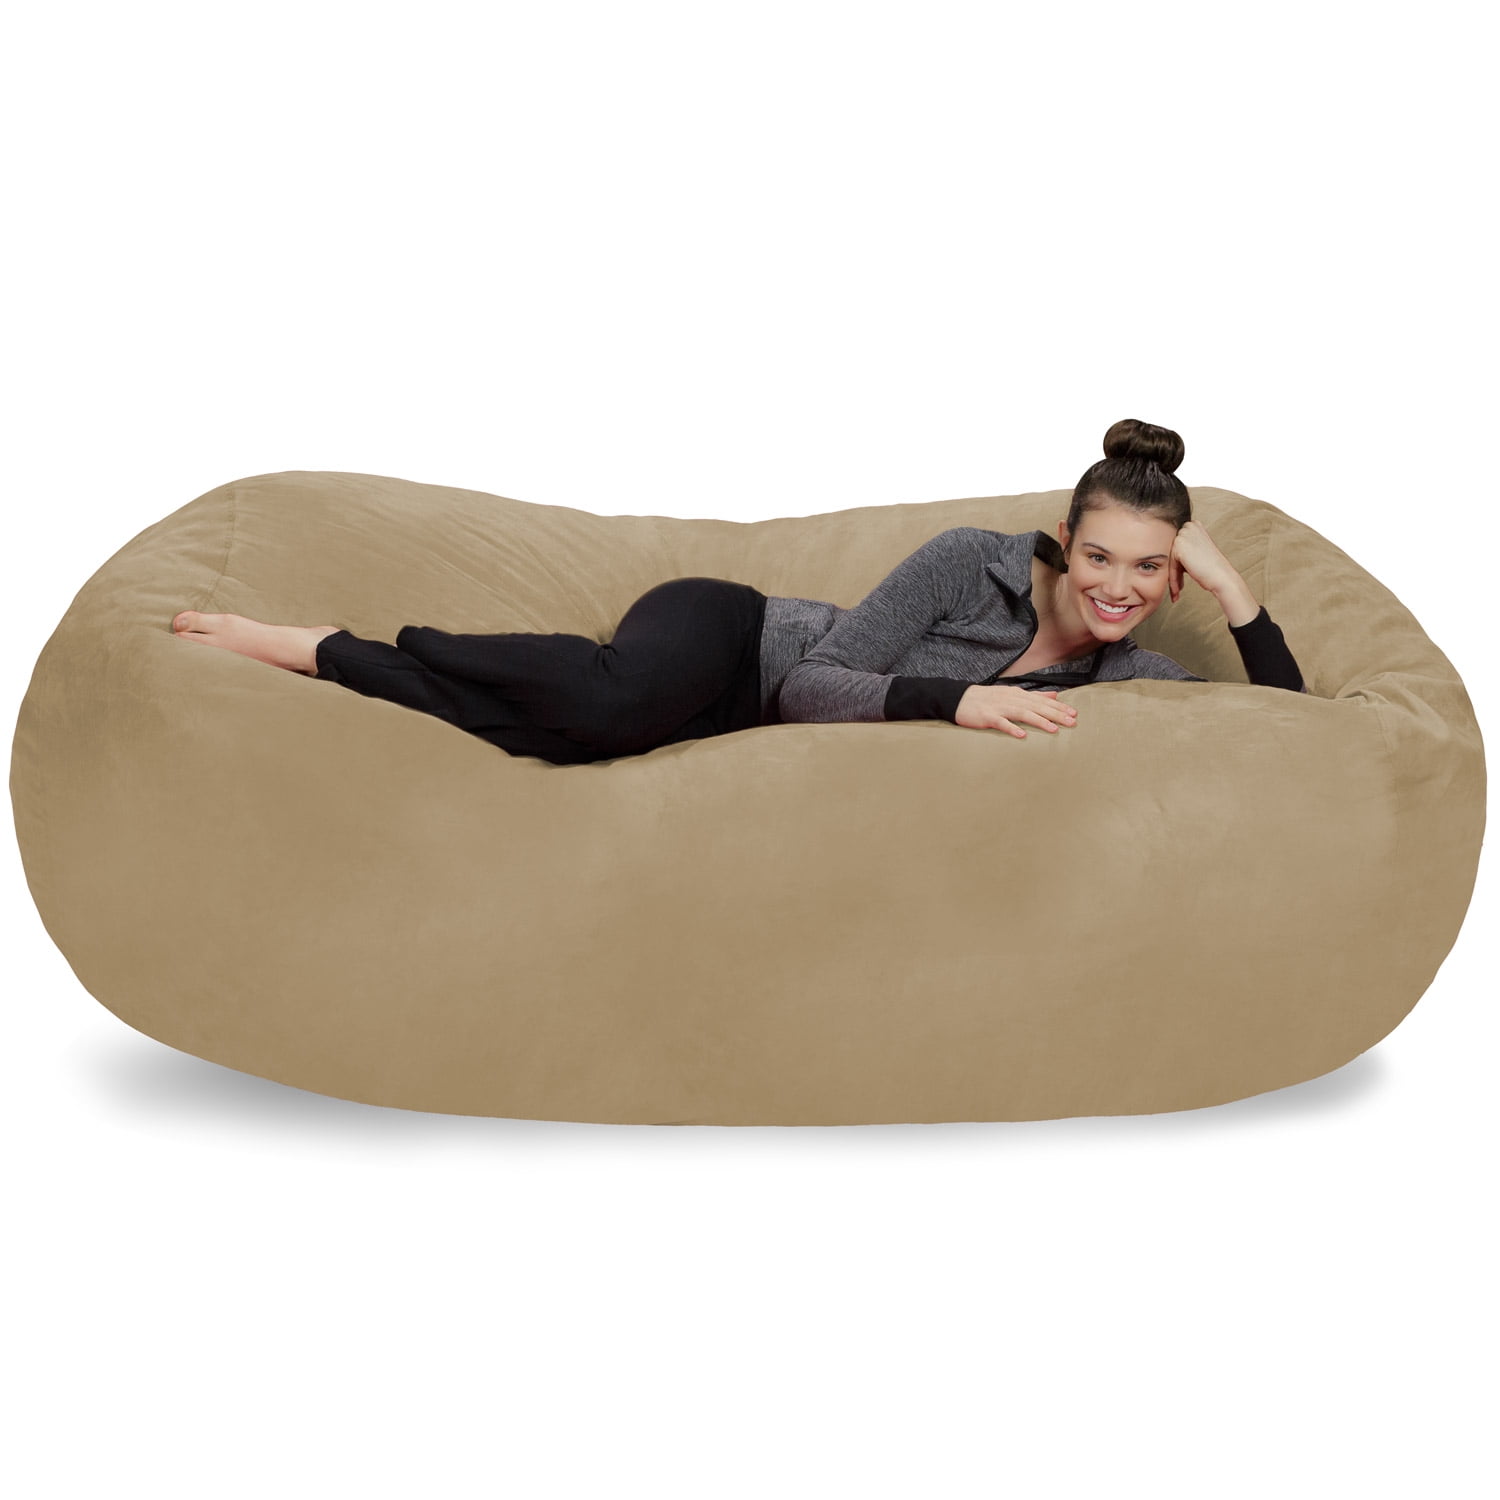 Large Memory Foam Microsuede Bean Bag Chair Loveseat - On Sale - Bed Bath &  Beyond - 8486397